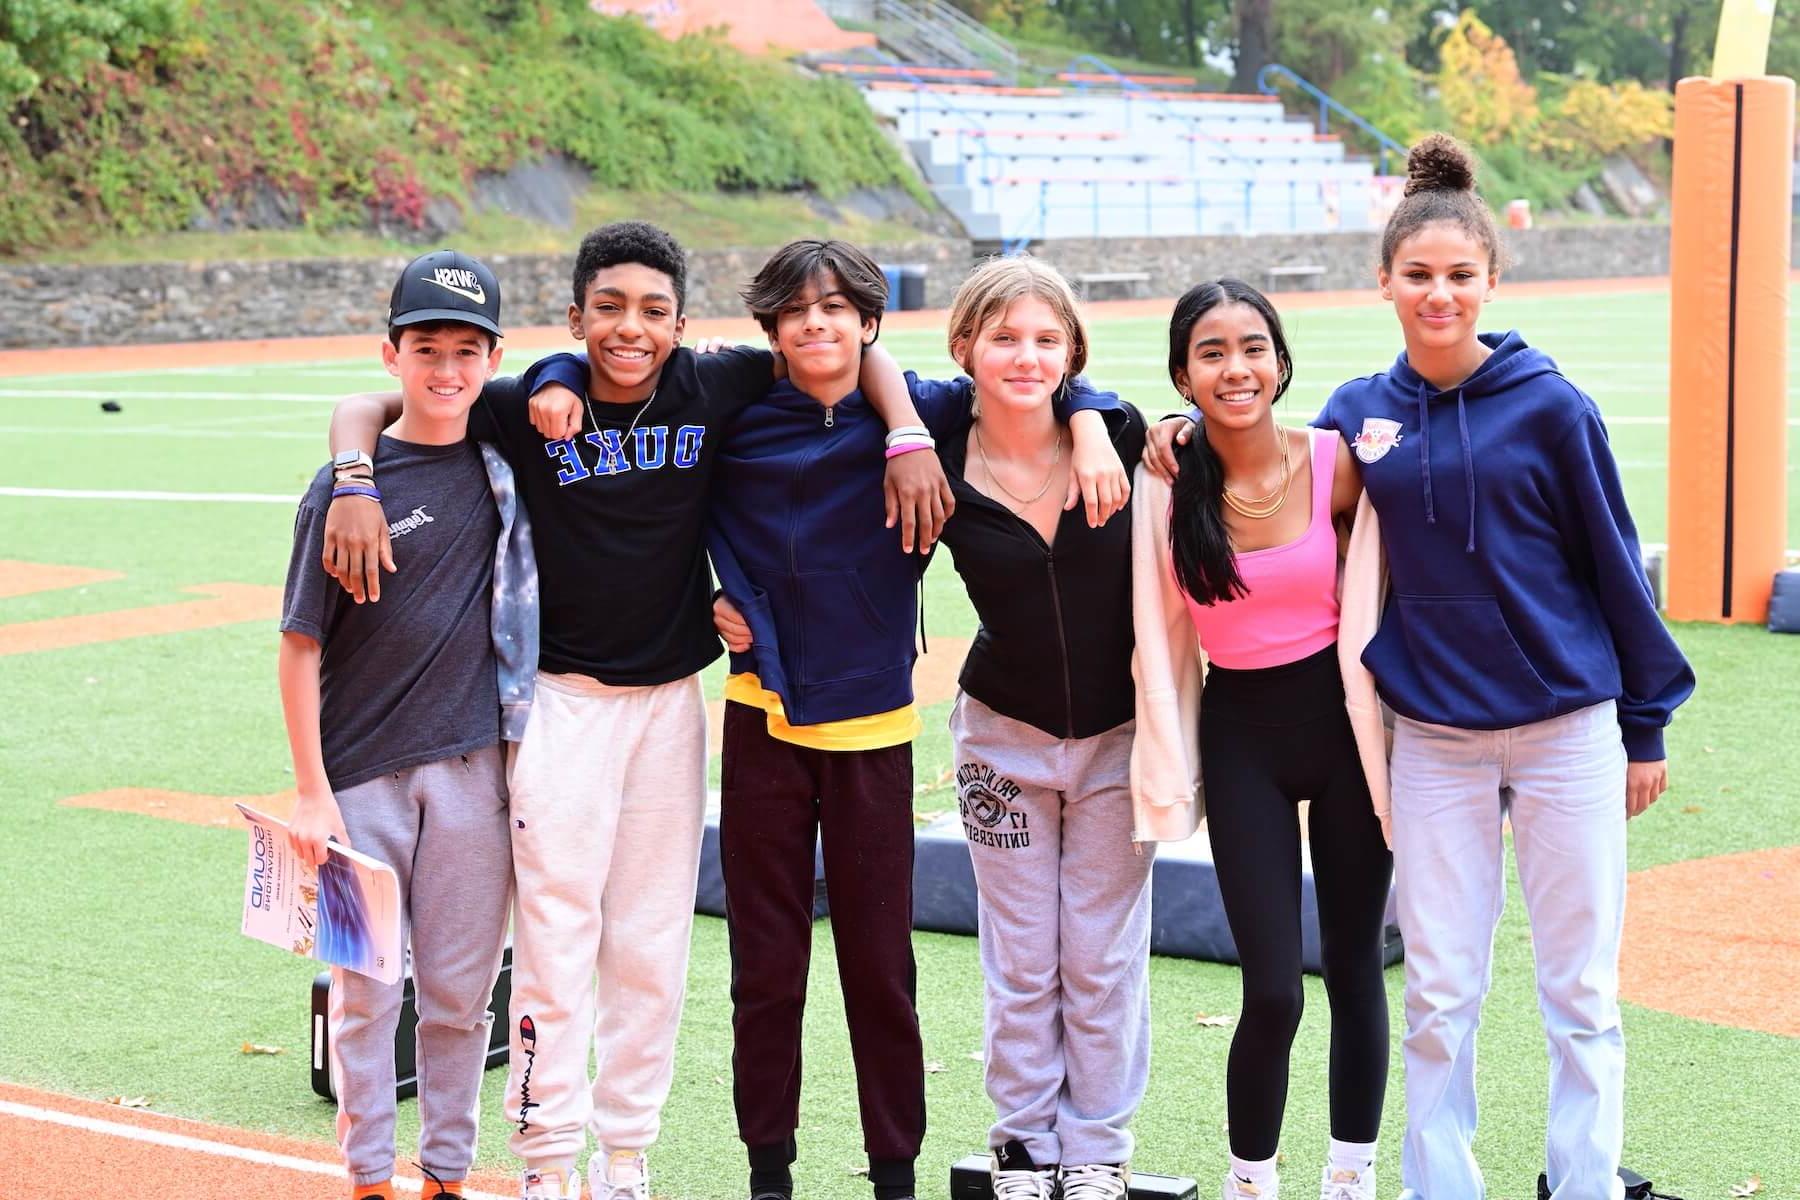 道德文化 Fieldston School Middle School students stand together in arms on athletic field